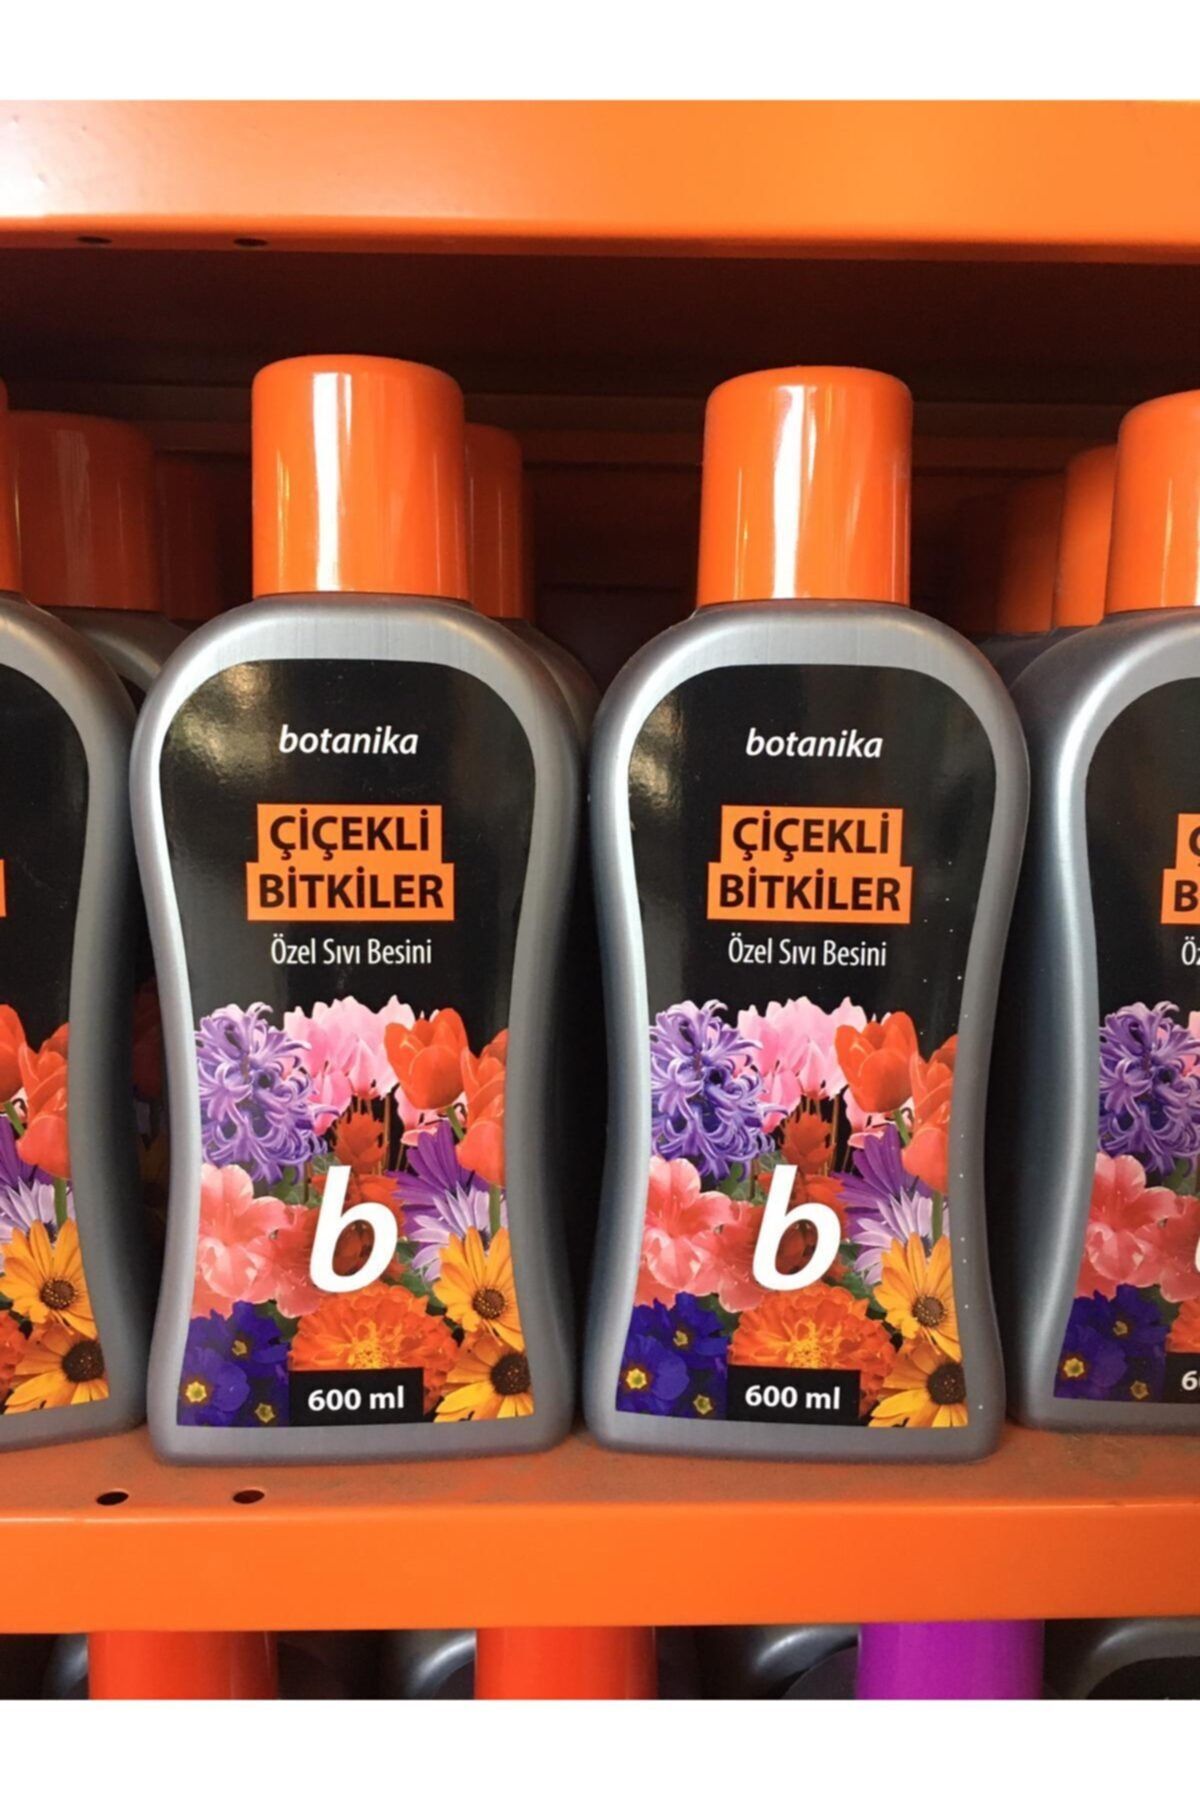 botanica Botanika Bitki Besini Çiçekli Biktiler Için Özel Sıvı Besin ( Çiçek Coşturan ) 600ml